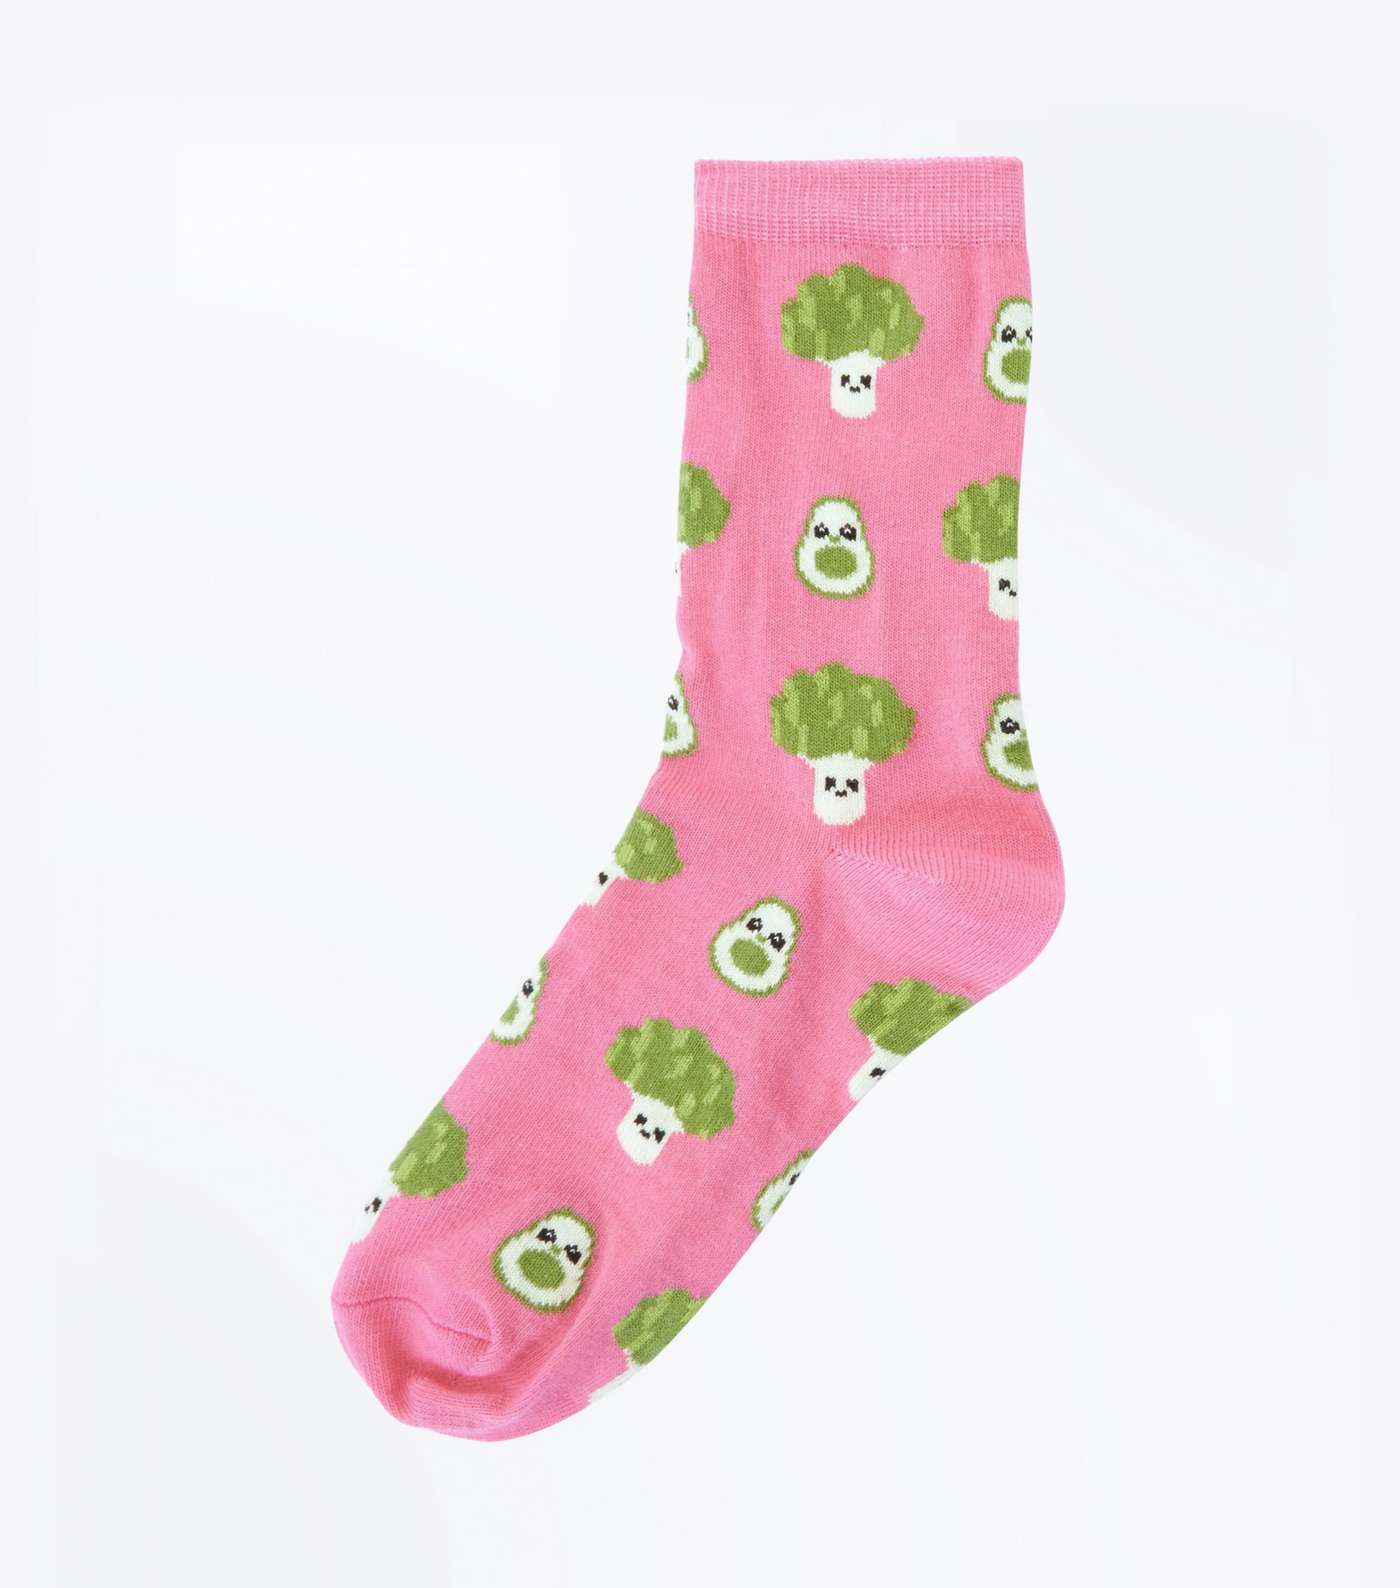 Pink Broccoli and Avocado Socks